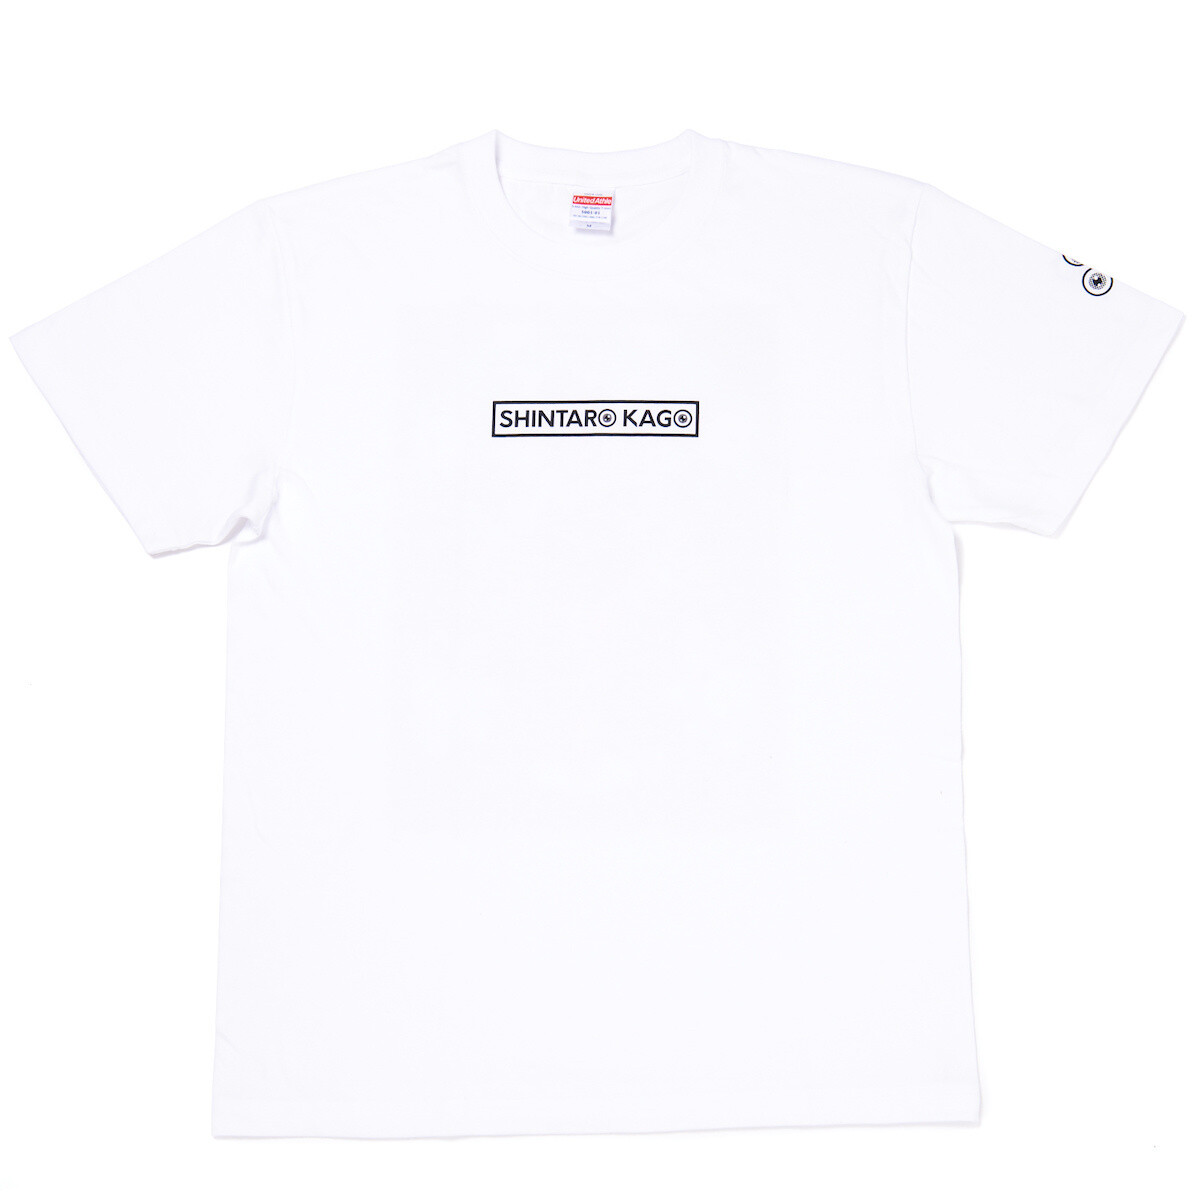 Shintaro Kago White T-Shirt - Tokyo Otaku Mode (TOM)